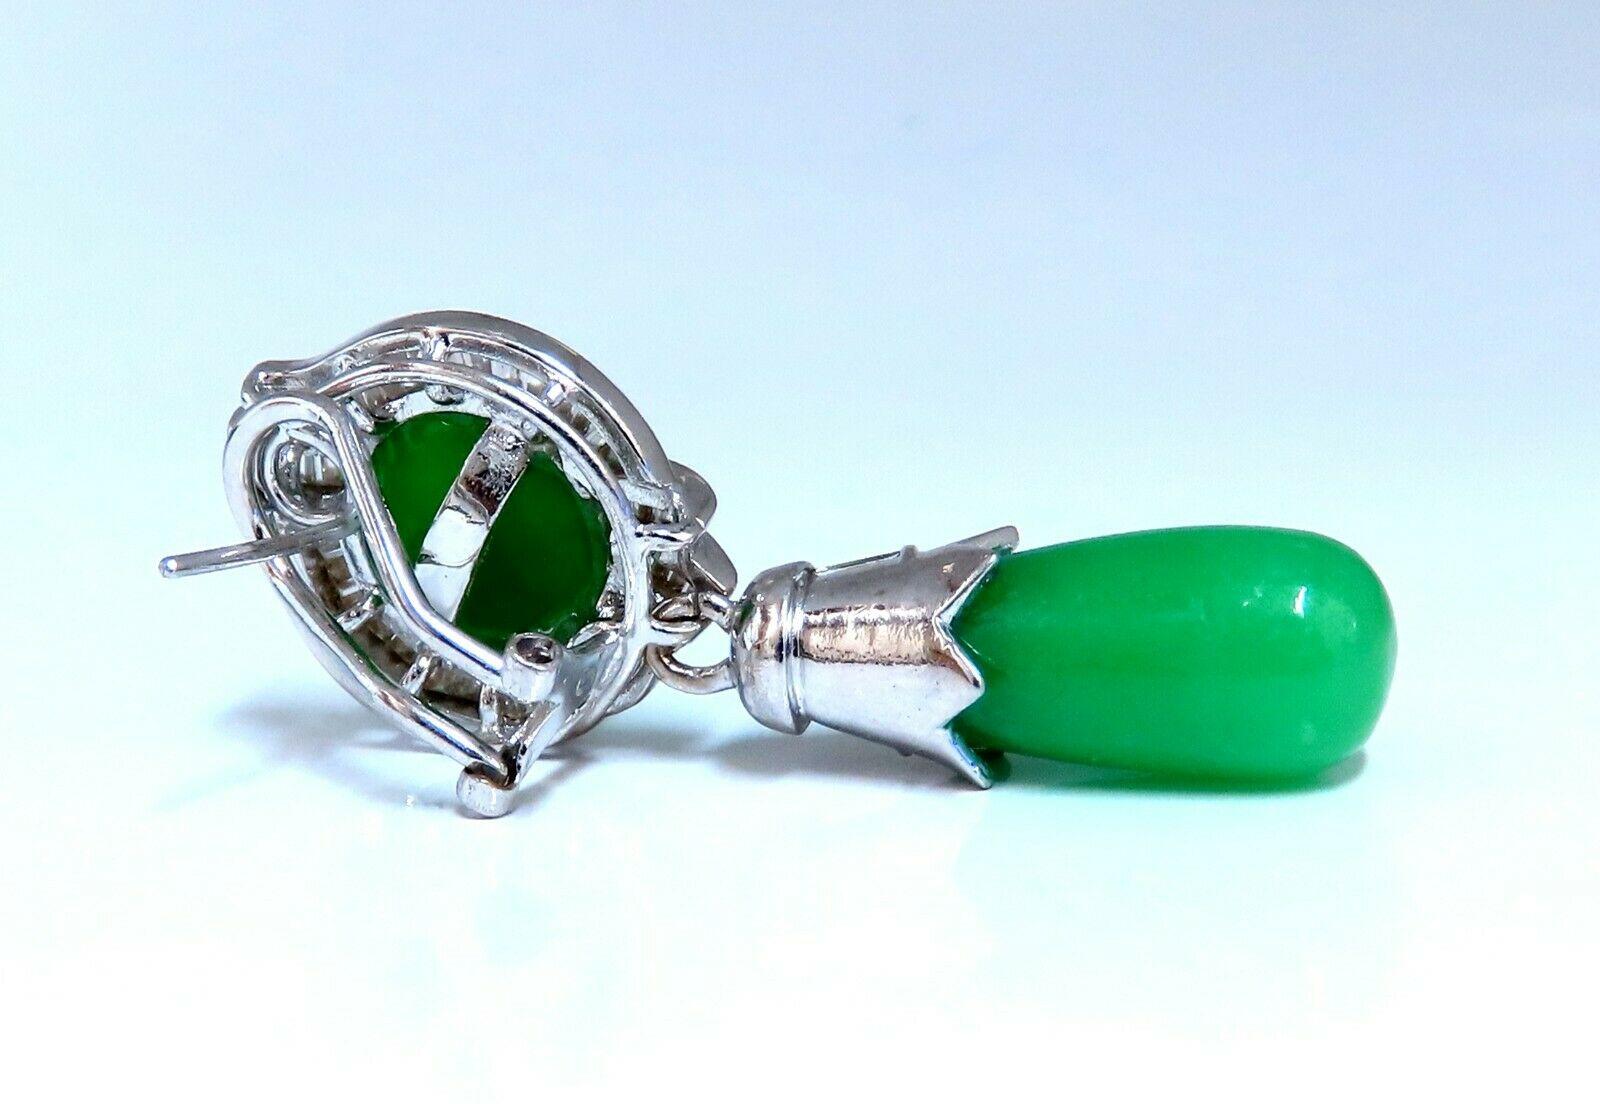 Boucles d'oreilles pendantes en forme de goutte de jade en grappe

20ct Jade vert naturel assorti.

10.perle supérieure 8mm

9.2 x 4mm gouttes.

diamants naturels taille brillant baguette de 2 carats.

Couleur G vs2 clarté

or blanc 18 carats 26